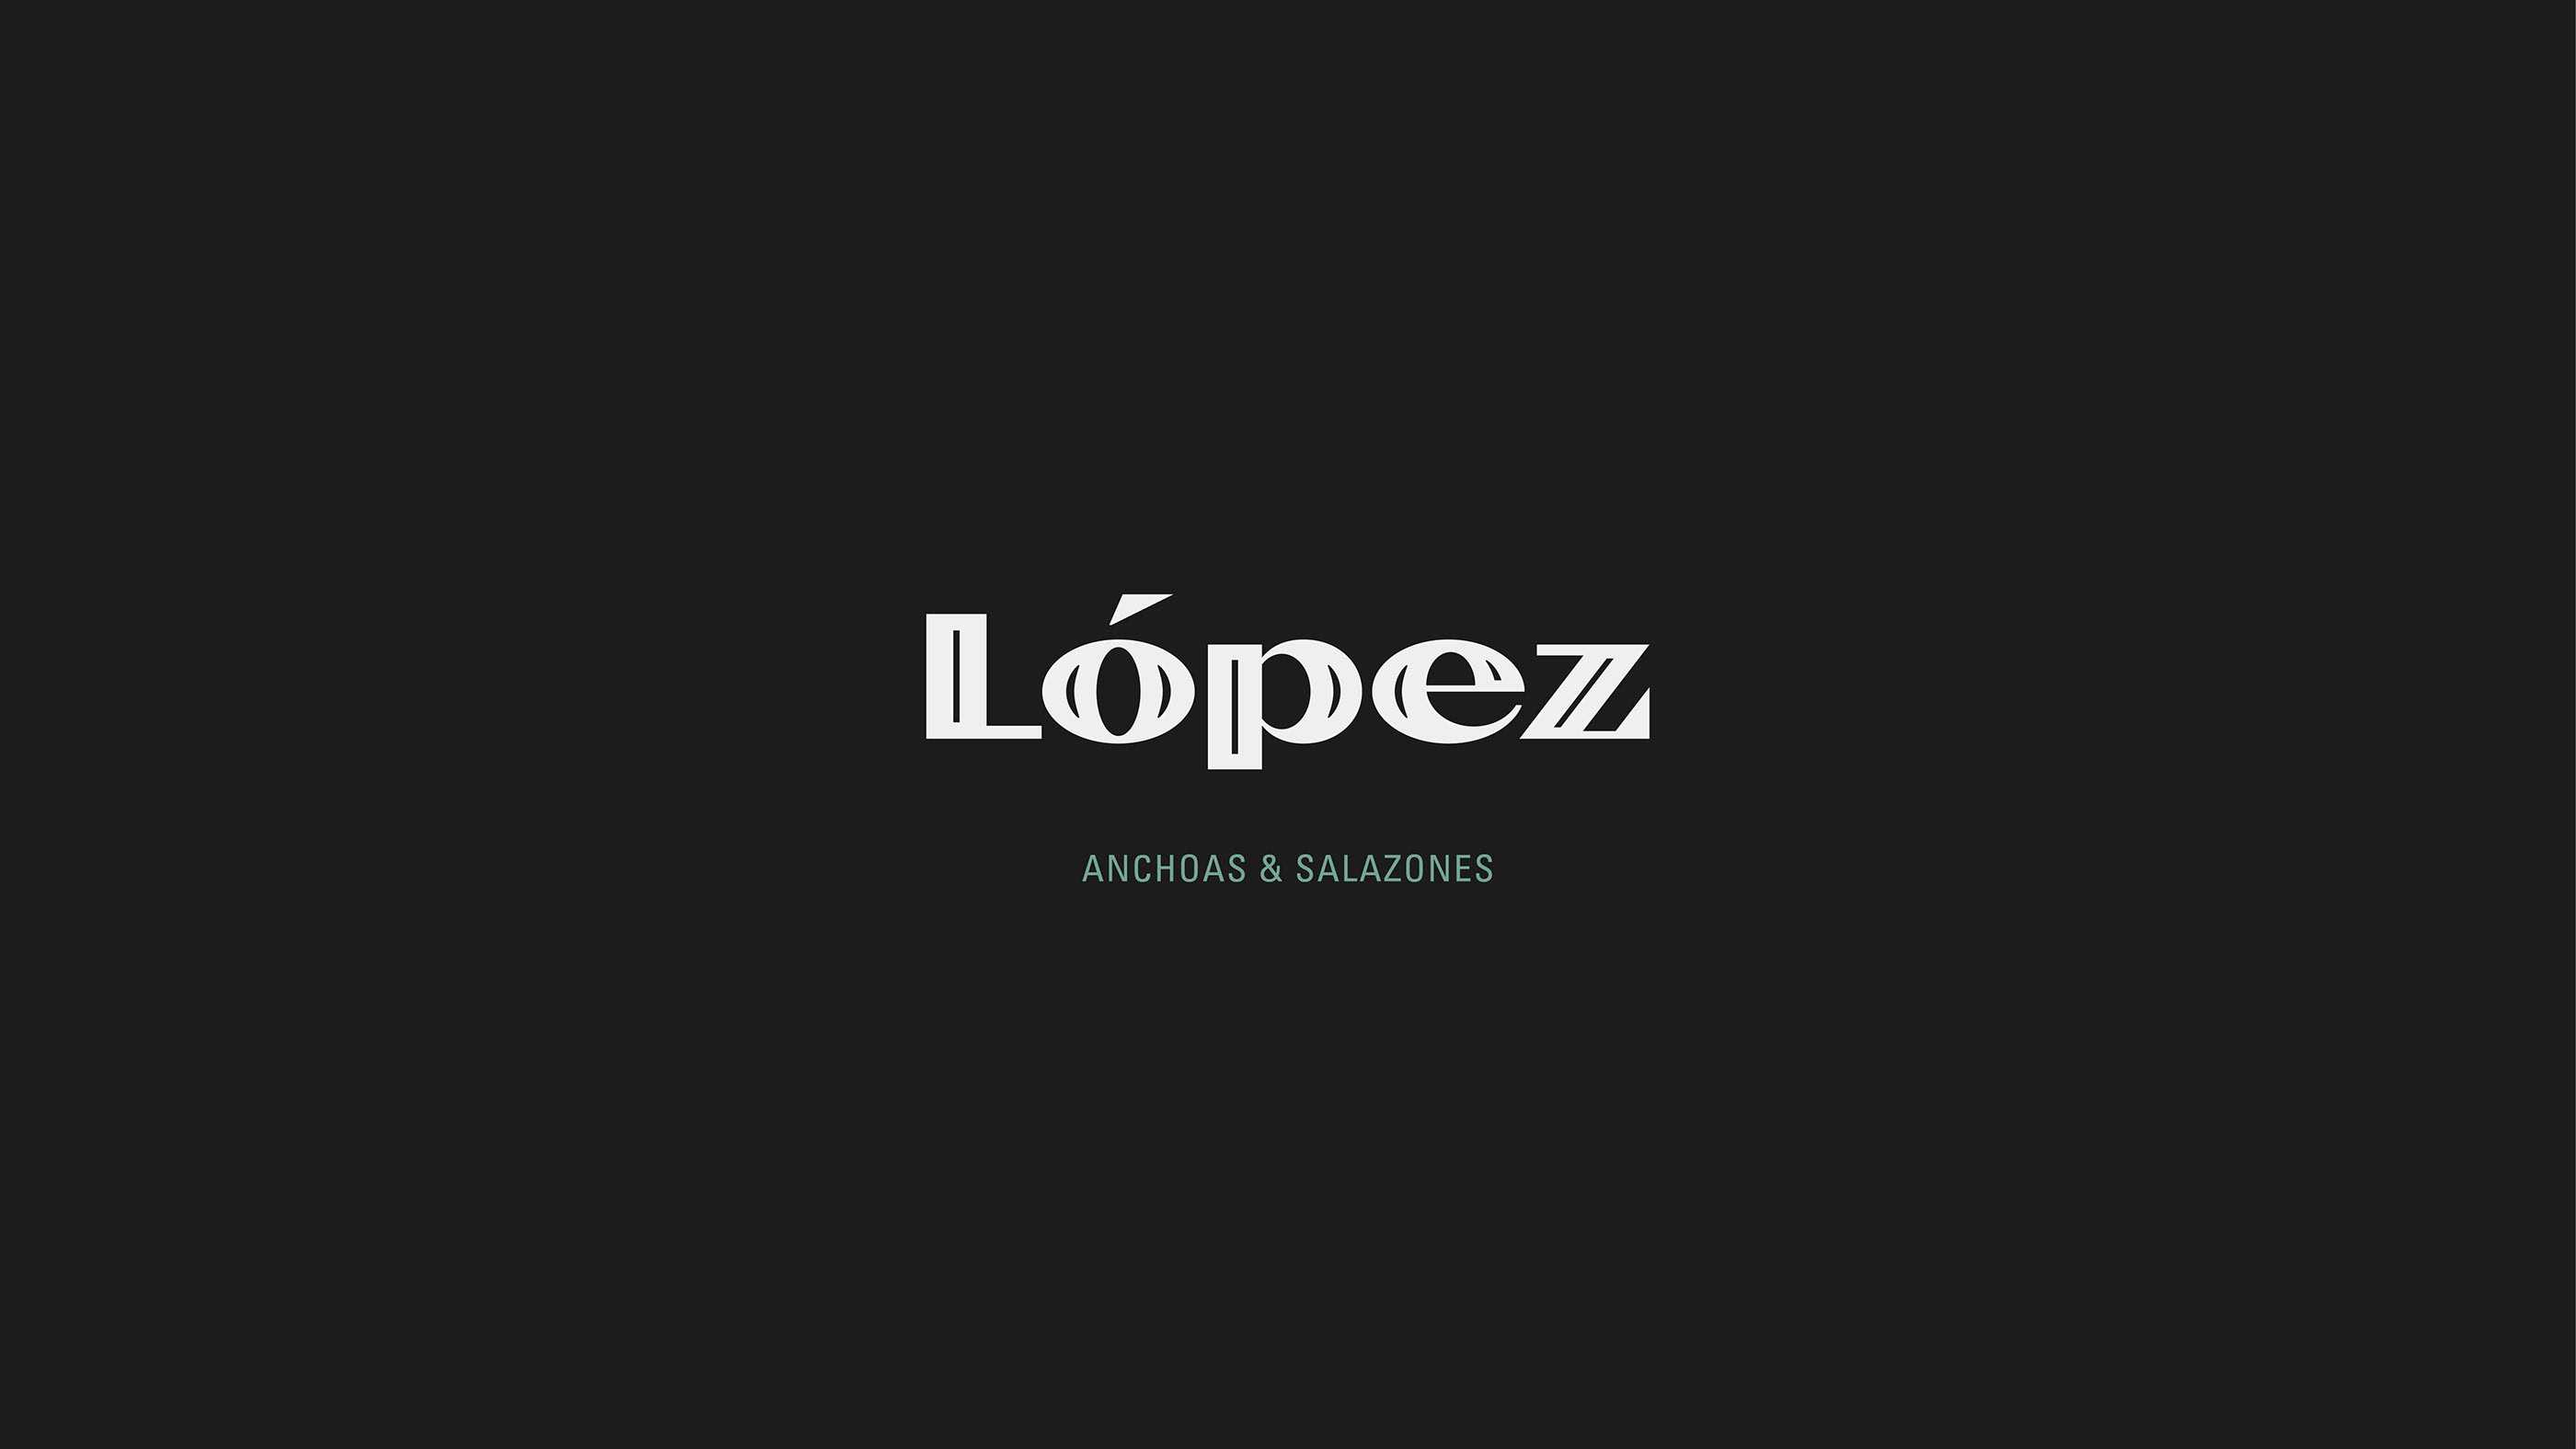 Anchoas López